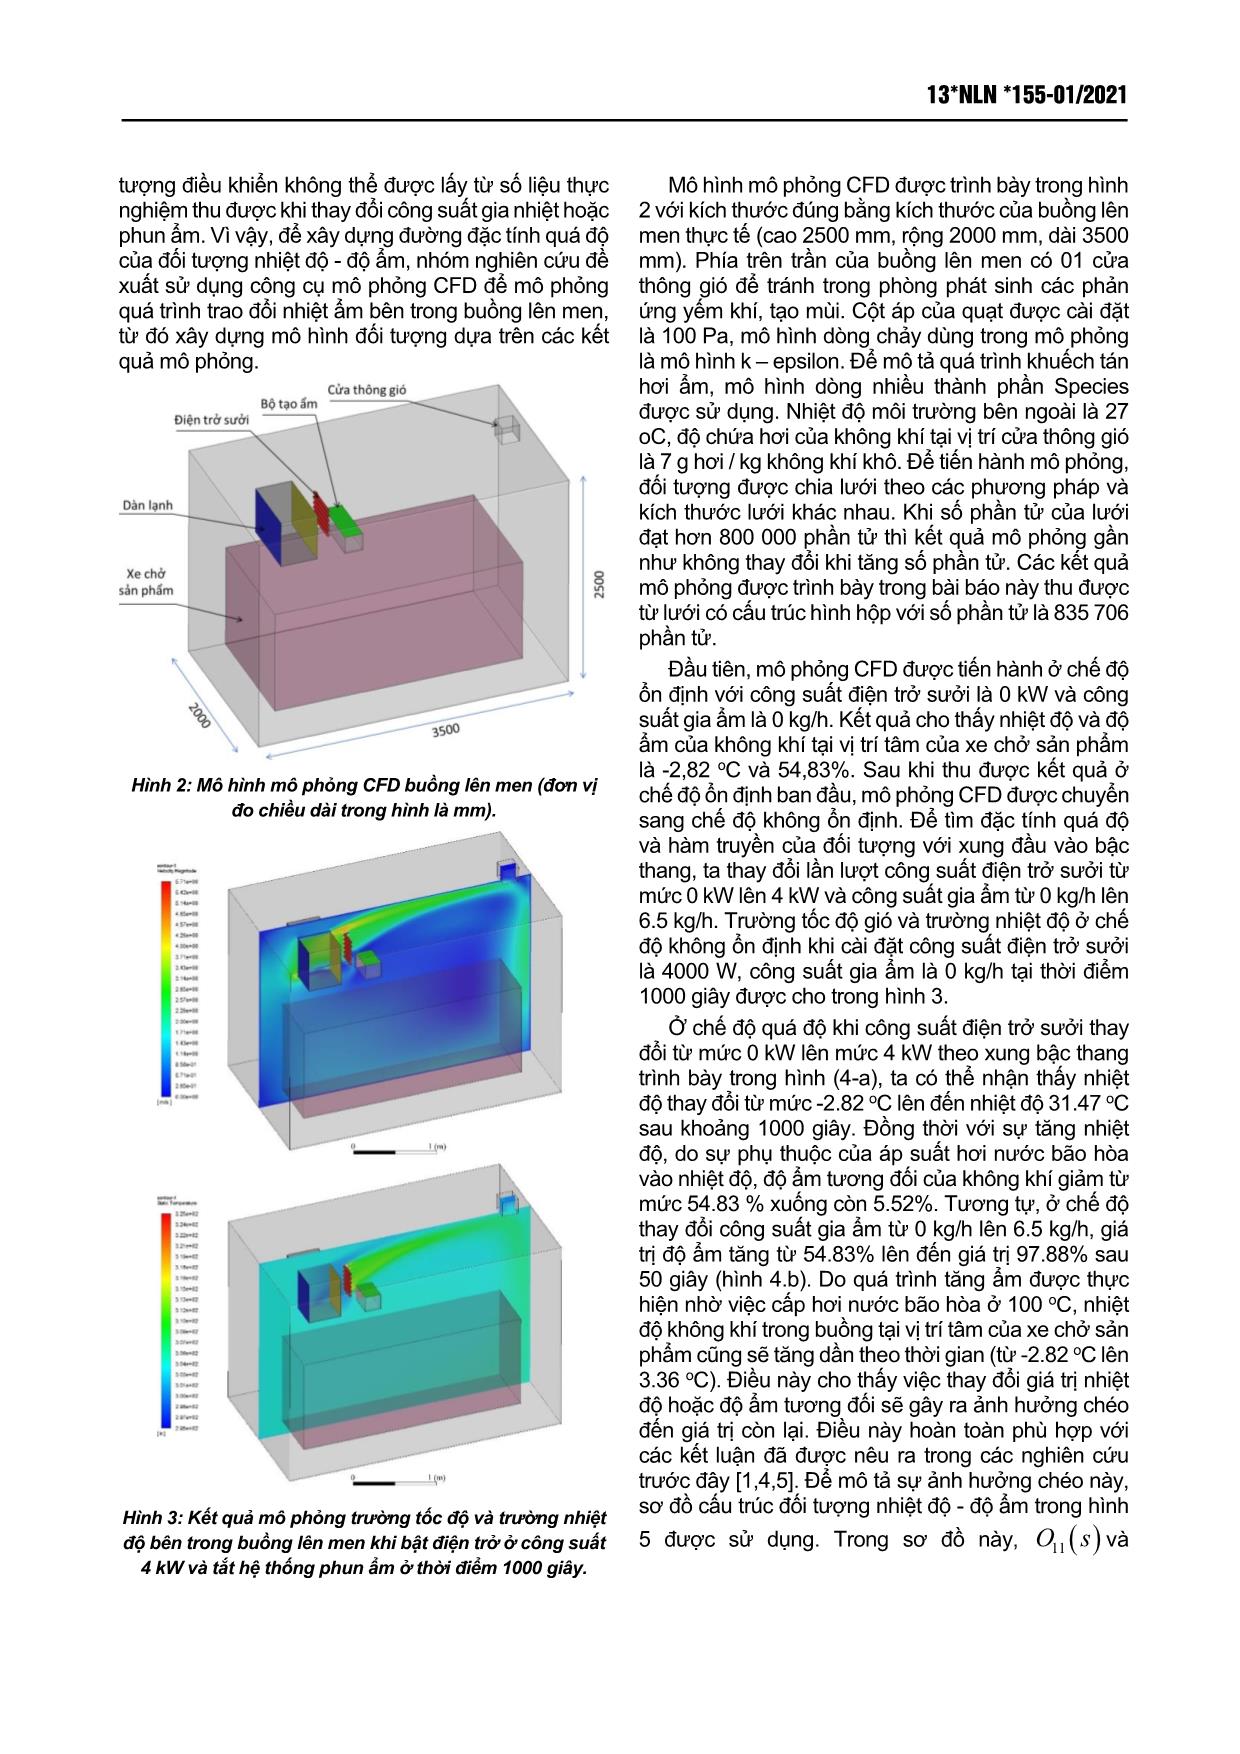 Xây dựng bộ điều khiển tách kênh nhiệt độ - Độ ẩm cho buồng lên men dựa trên mô hình mô phỏng CFD trang 2